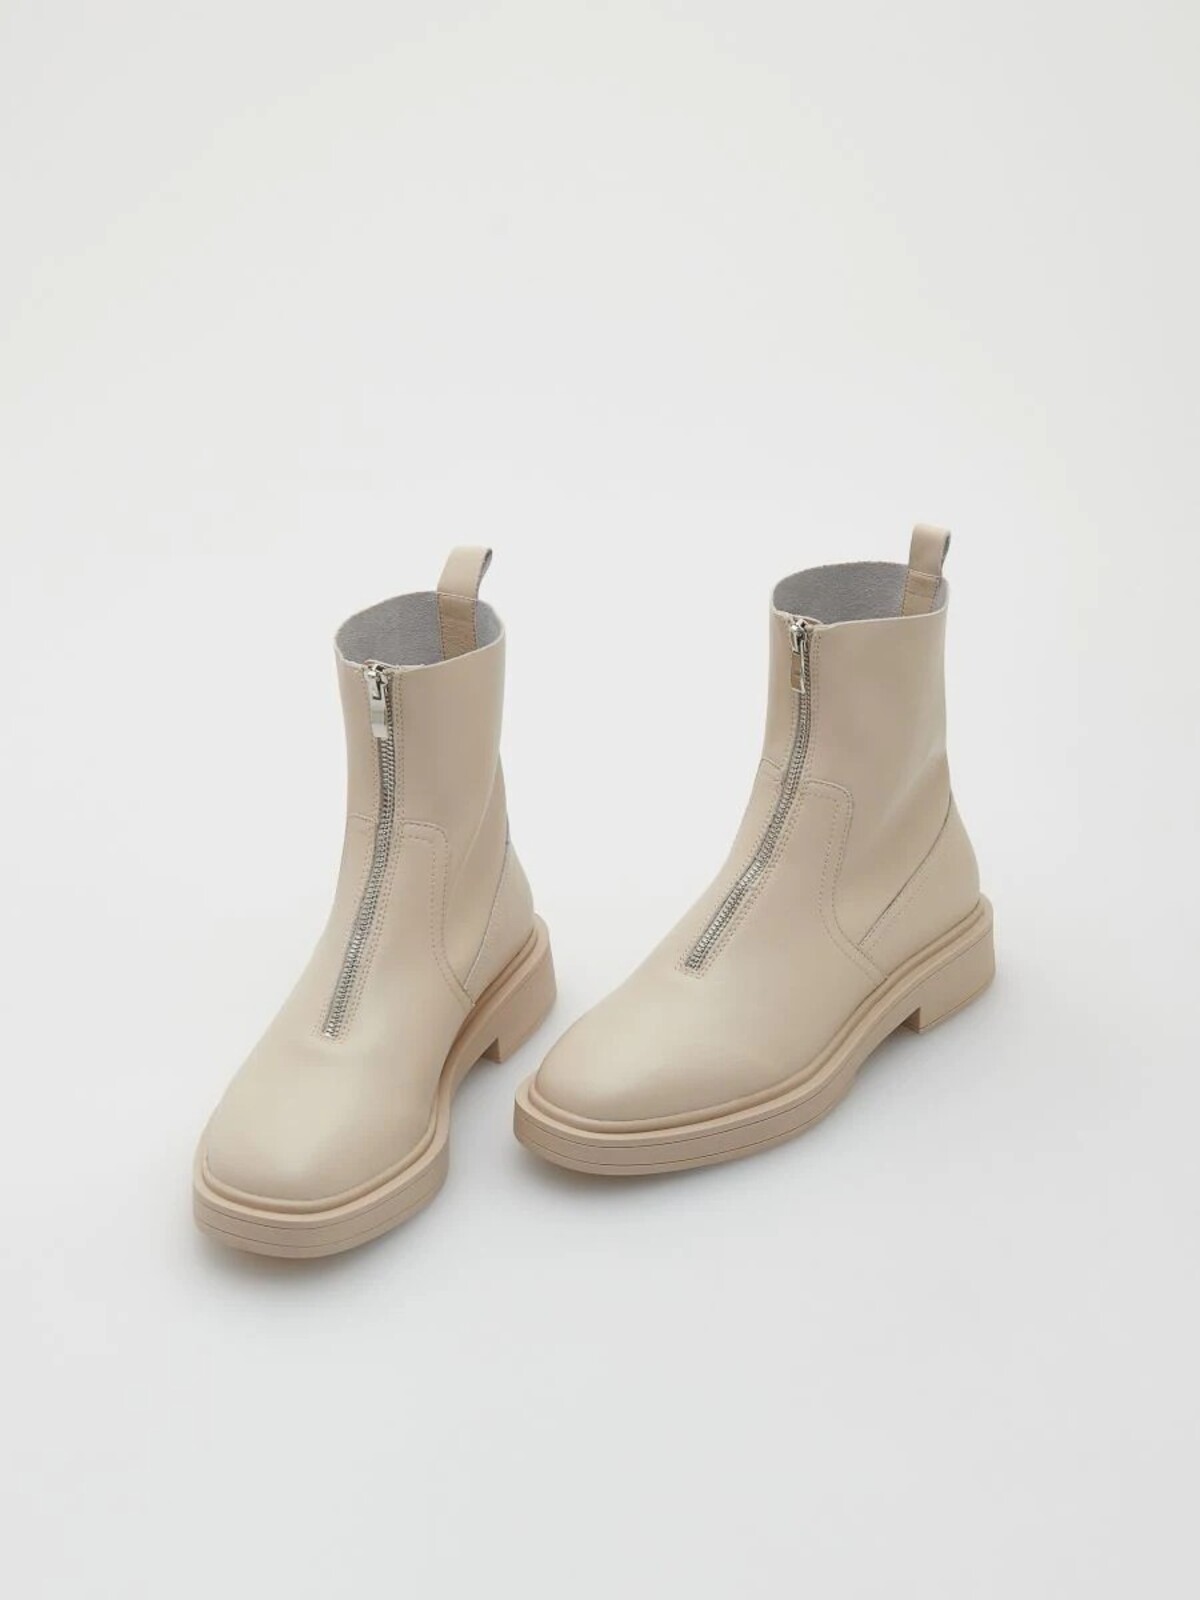 Béžovému modelu chelsea boots od značky Reserved dodáva unikátnosť a extravaganciu práve výrazný strieborný zips a okrúhla špička. Z oficiálnej stránky Reserved kúpiš tieto štýlovky za 39,99 eura.